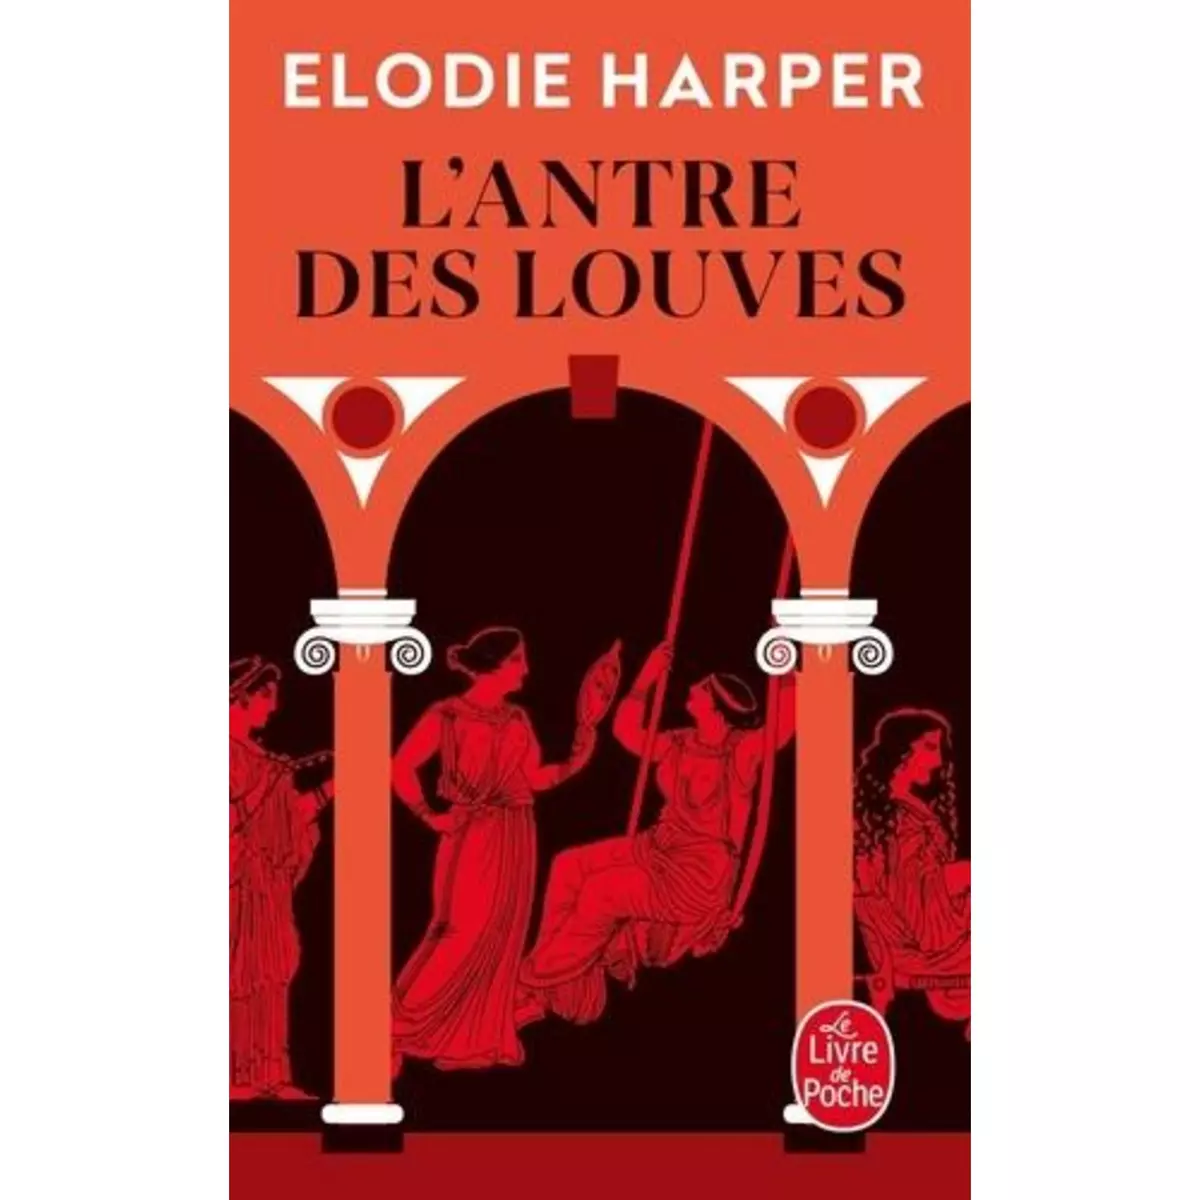  L'ANTRE DES LOUVES, Harper Elodie